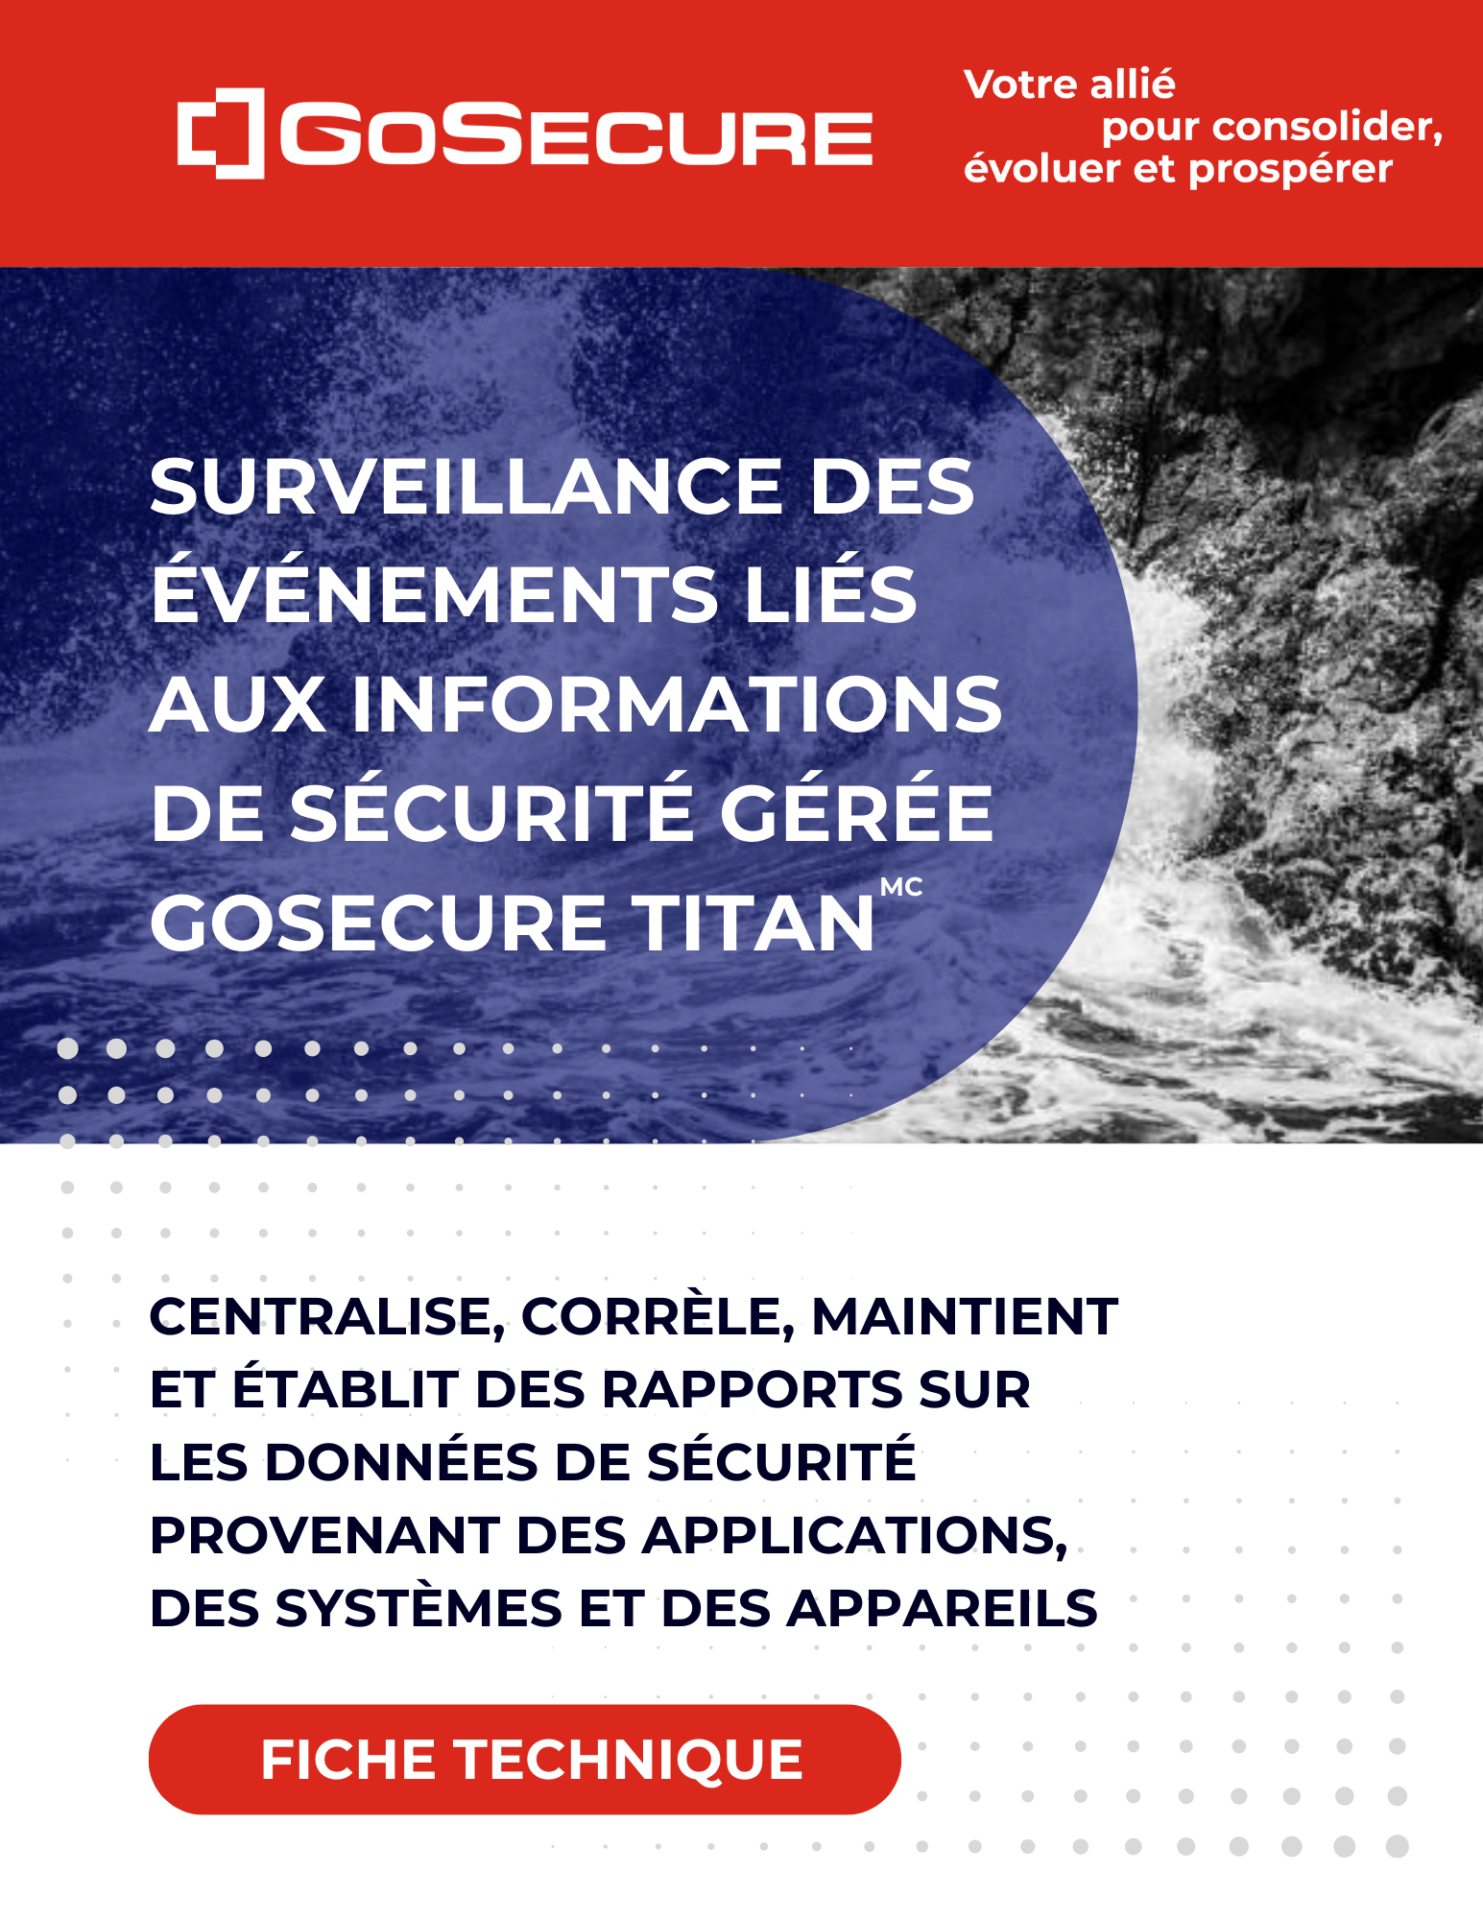 Image de couverture-Fiche technique-Surveillance des événements liés aux informations de sécurité gérée GoSecure Titan